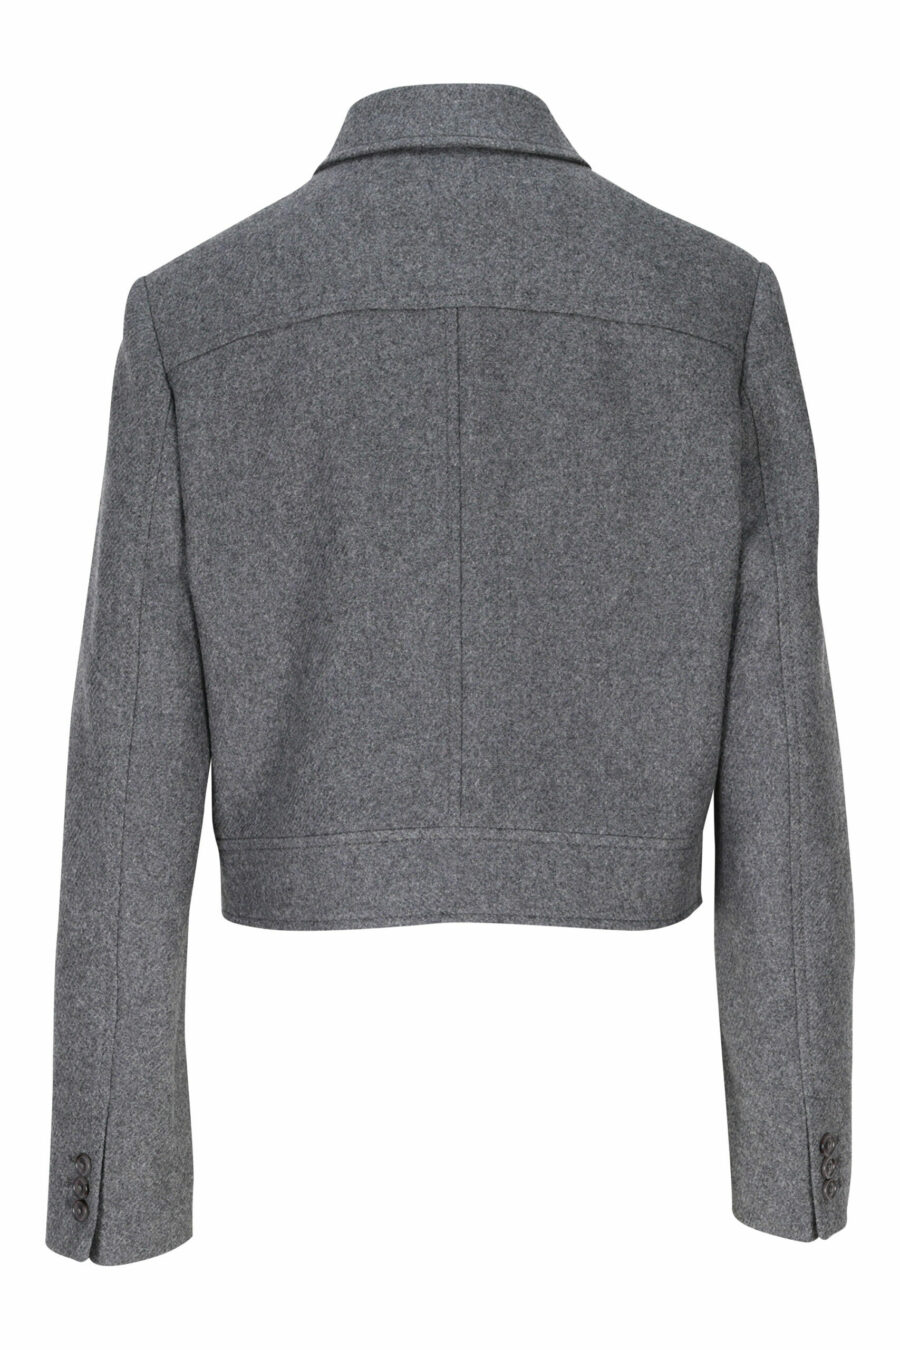 Grey jacket with mini-logo on sleeve - 3612230490567 2 scaled